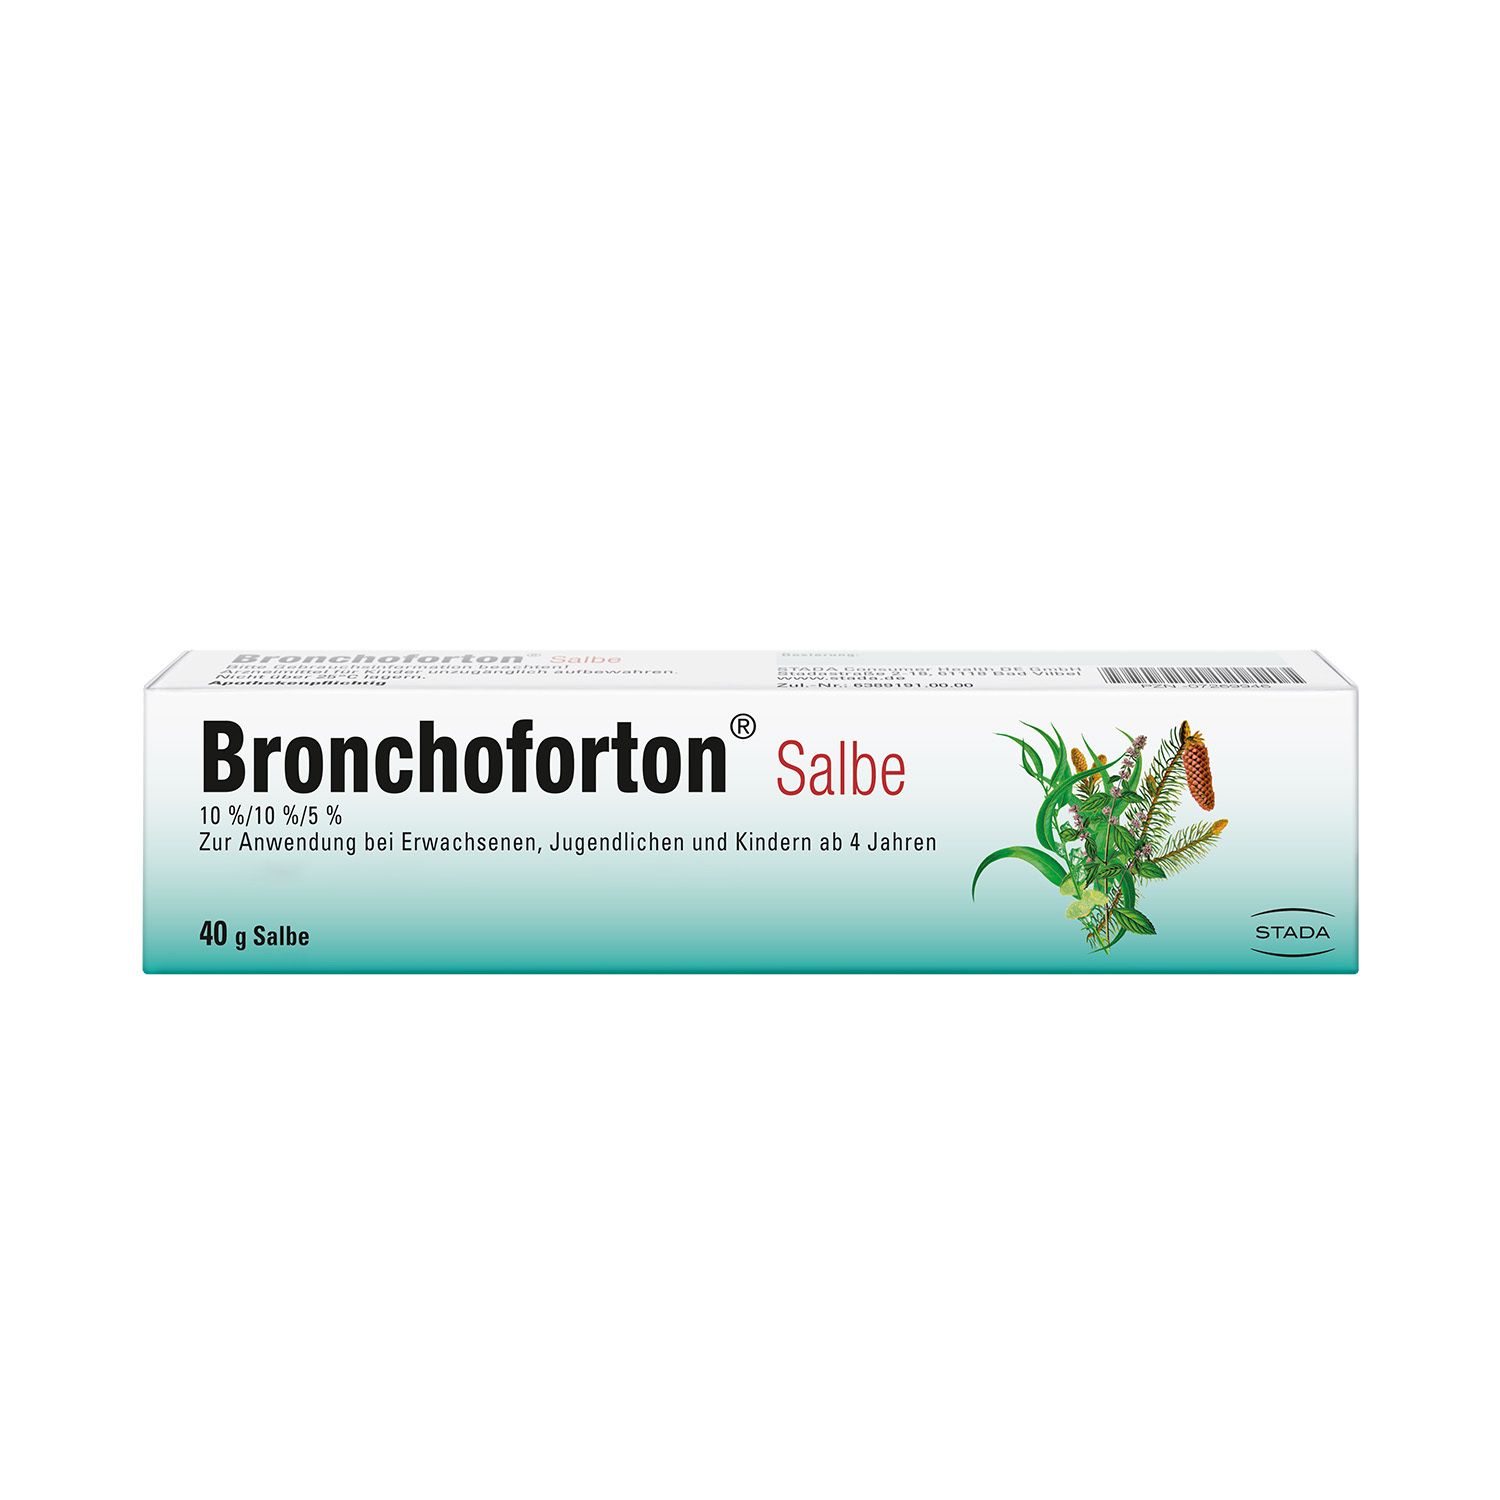 Bronchoforton® Salbe – Erkältungssalbe mit rein pflanzlichen Wirkstoffen. Löst zähen Schleim, erleichtert das Abhusten; mit Eukalyptus-, Fichtennadel- und Pfefferminzöl